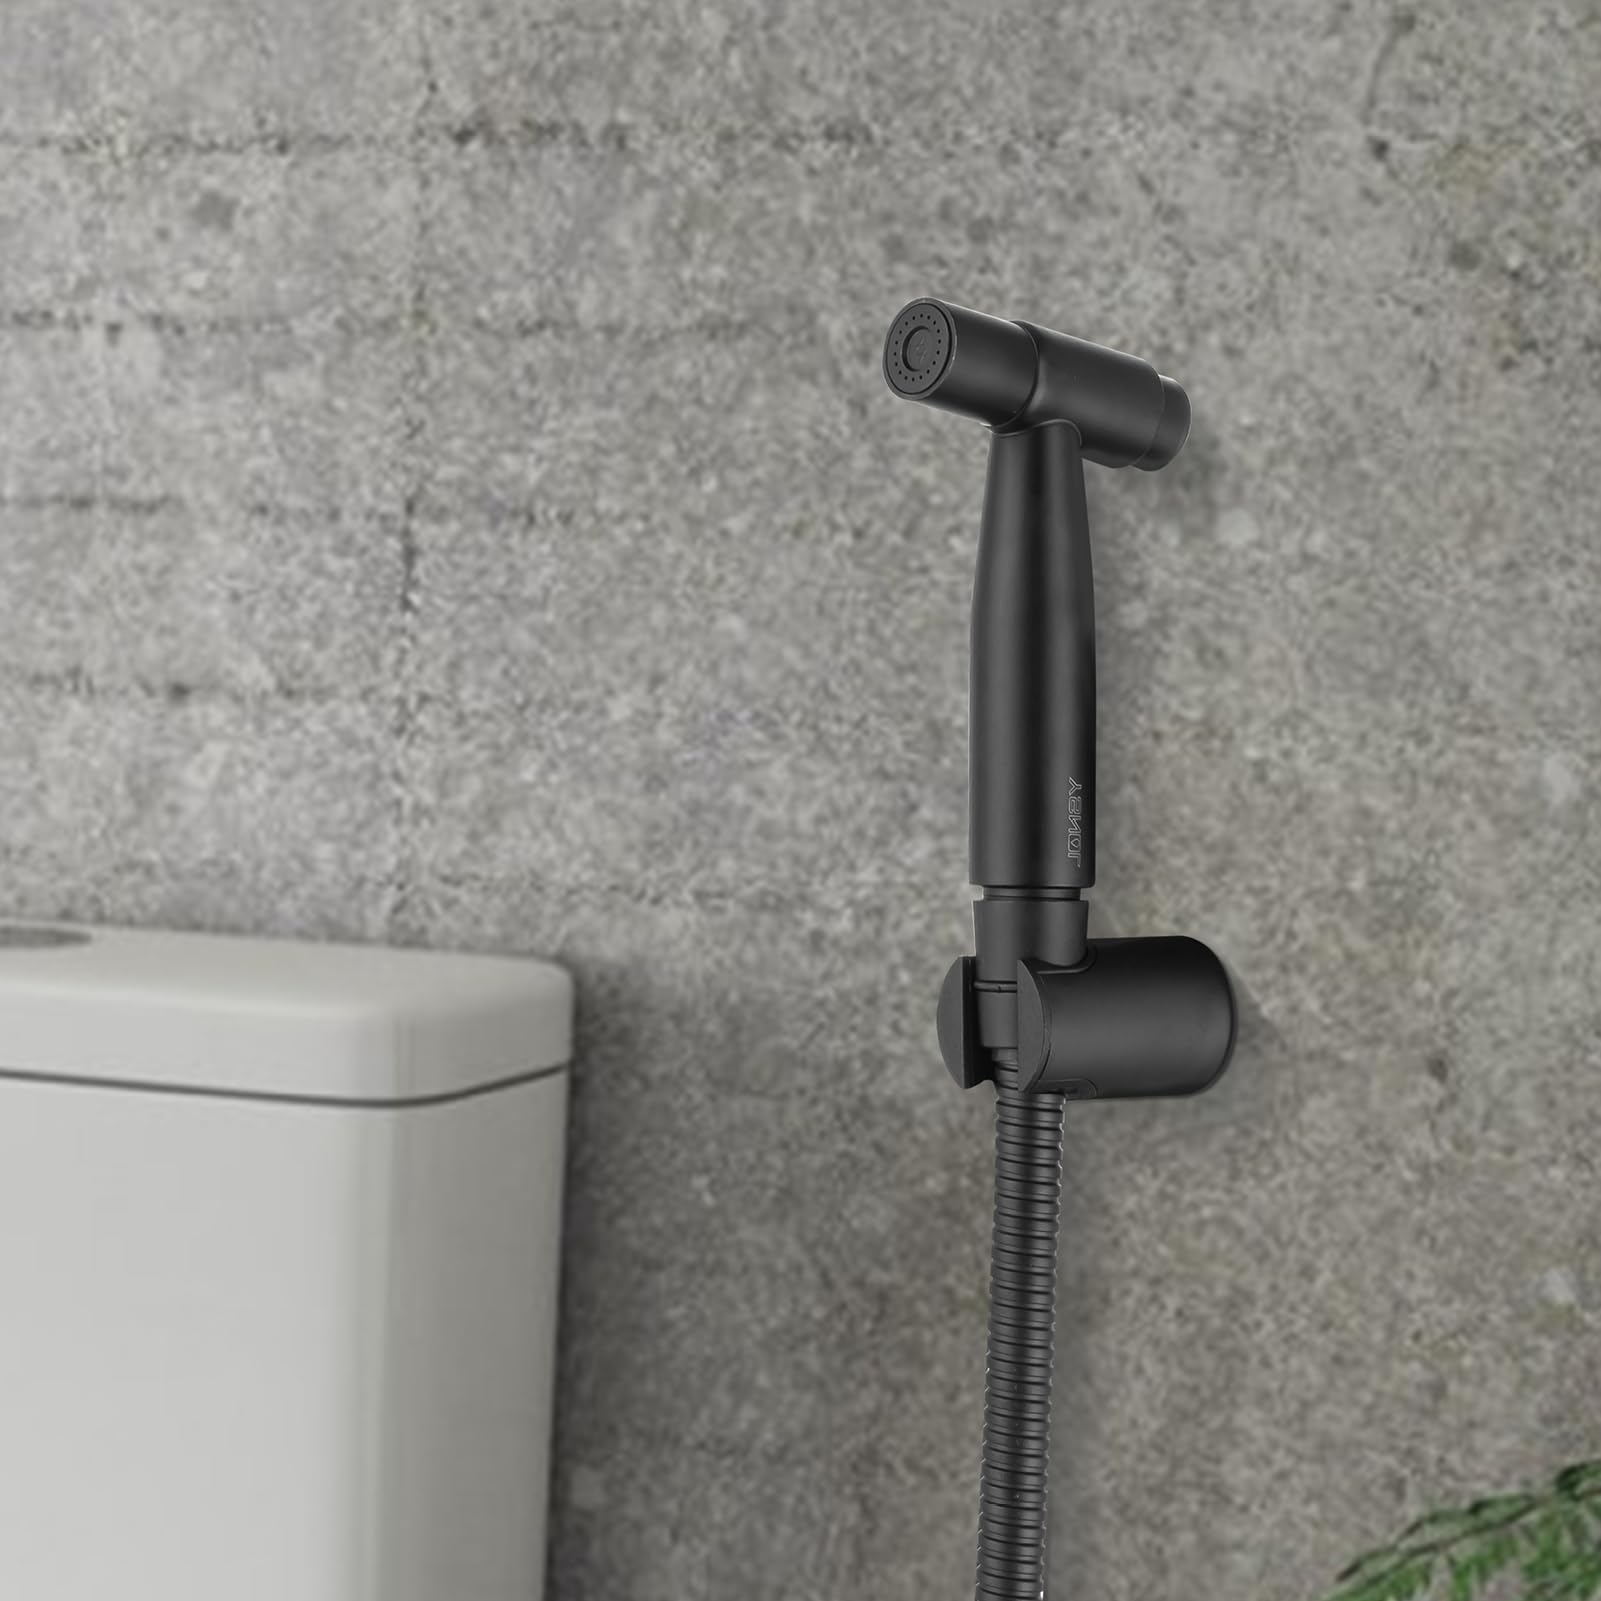 New Version Handheld Bidet Sprayer for Toilet, Ysnol Premium Stainless Steel Bathroom Bidet Sprayer Set with Superior Complete Accessories&One Button Switch, Support Wall or Toilet Mount - Matte Black